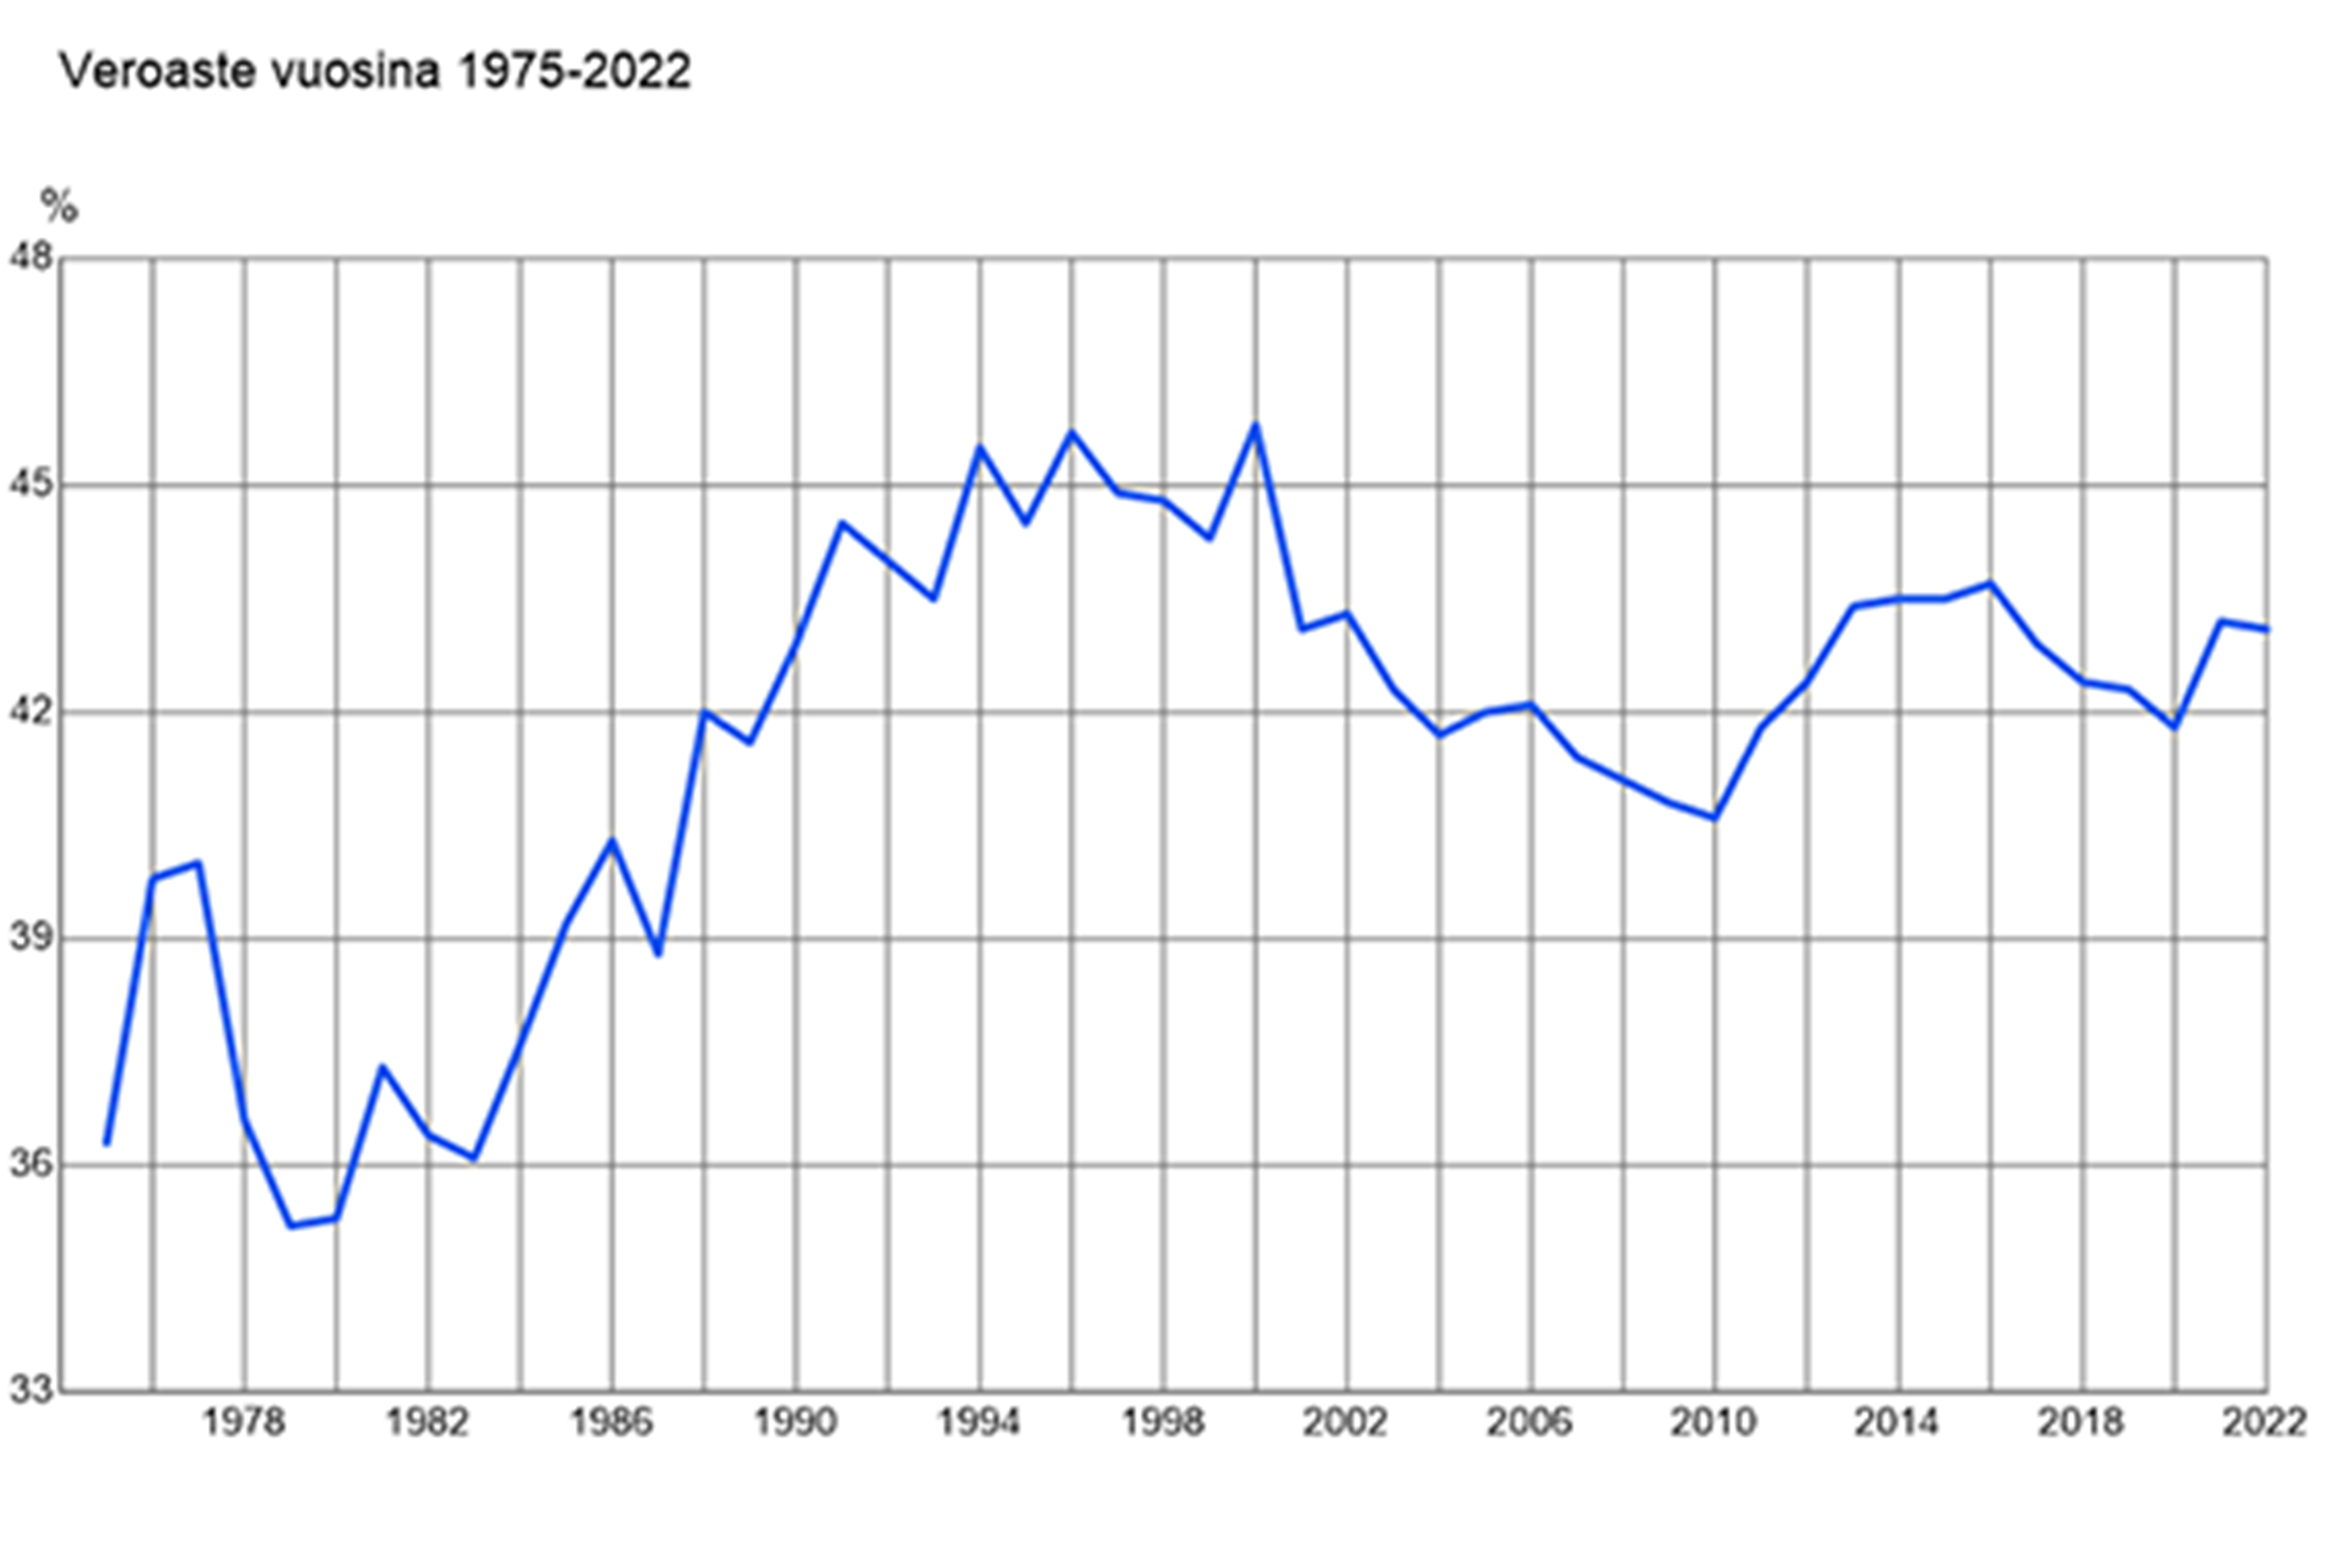 Veroaste vuosina 1975-2022 Kuva: Tilastokeskus, verot ja veronluonteiset maksut 